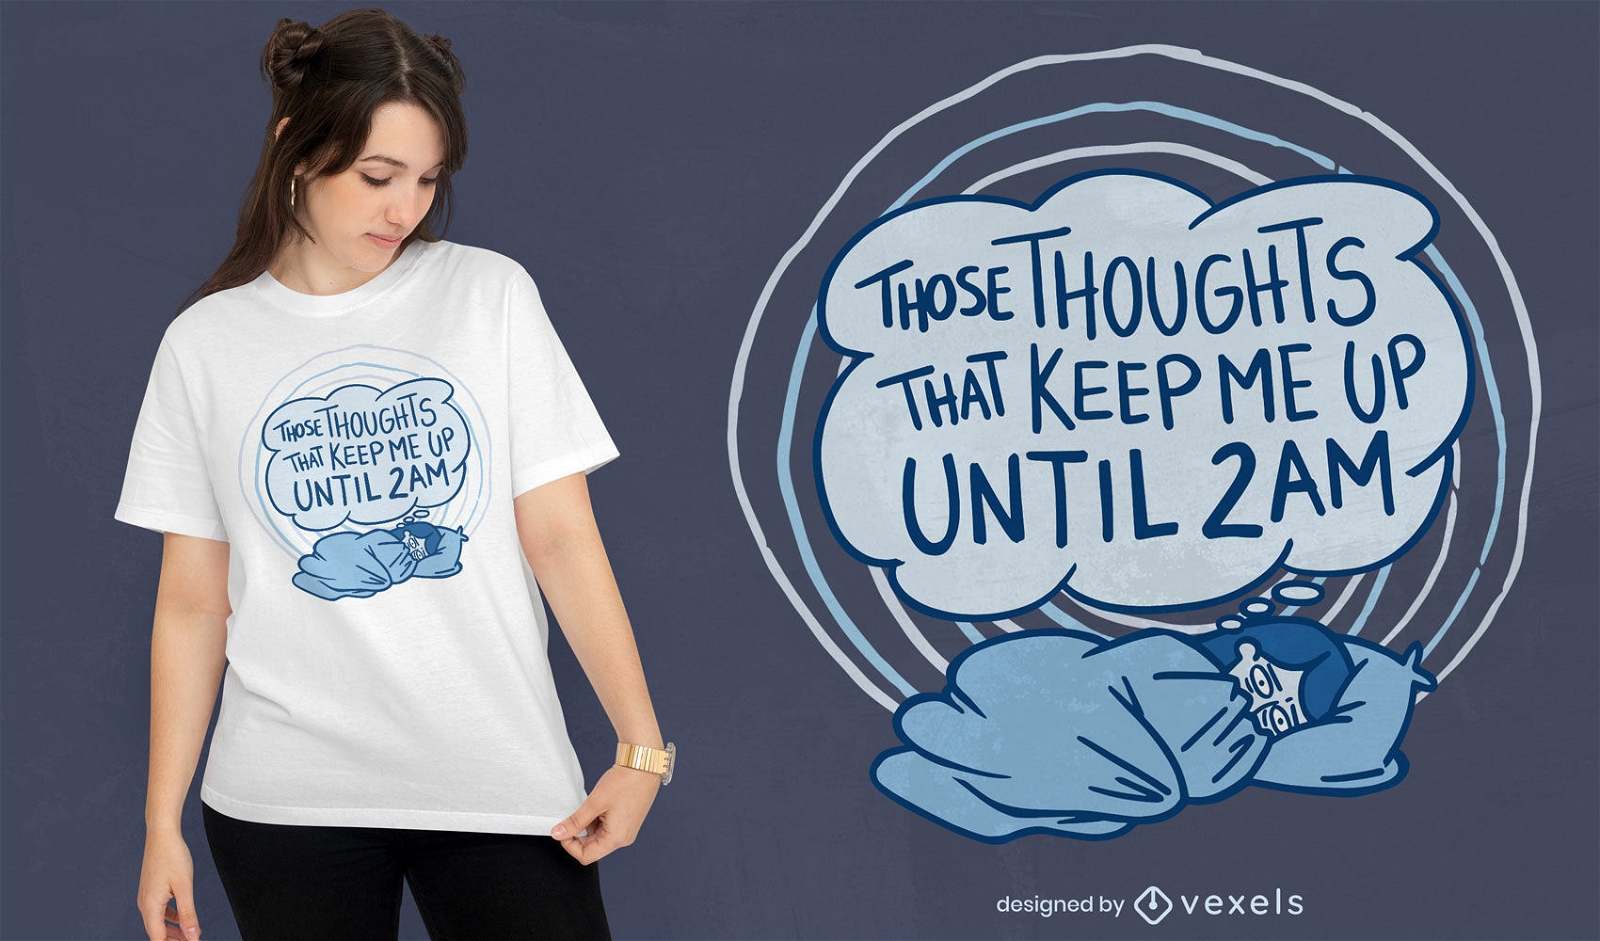 2am toughts t-shirt design